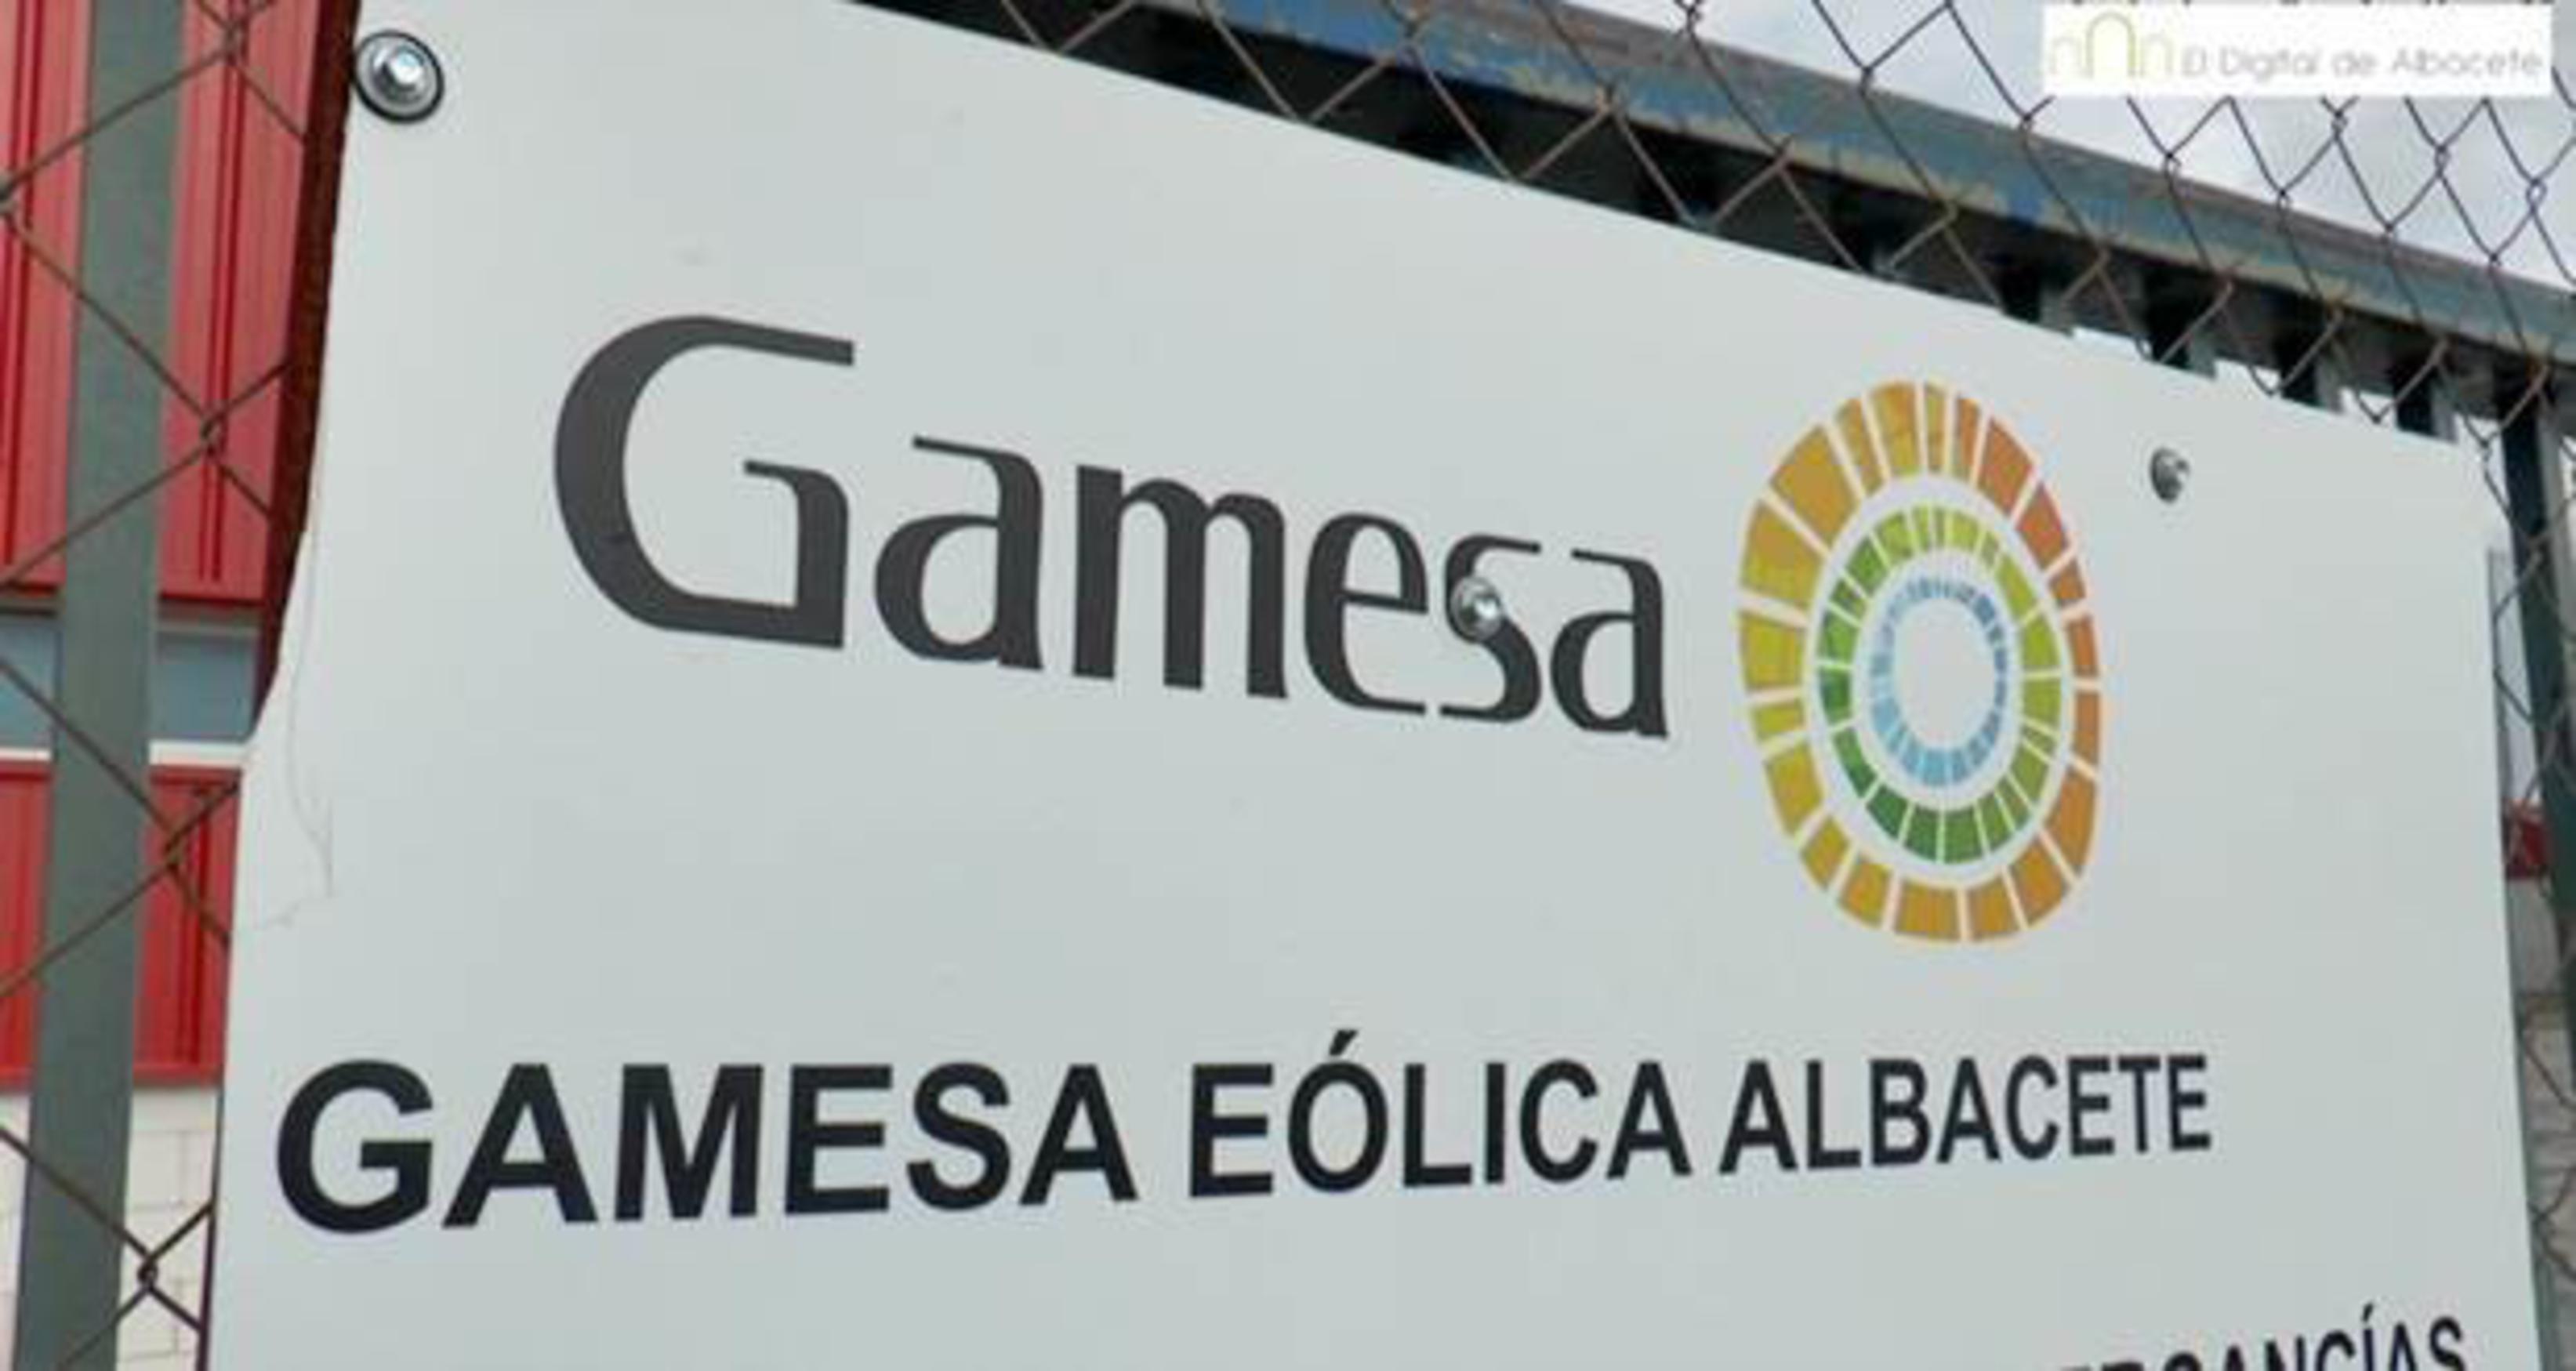 Gamesa anuncia el cierre de la planta de Albacete